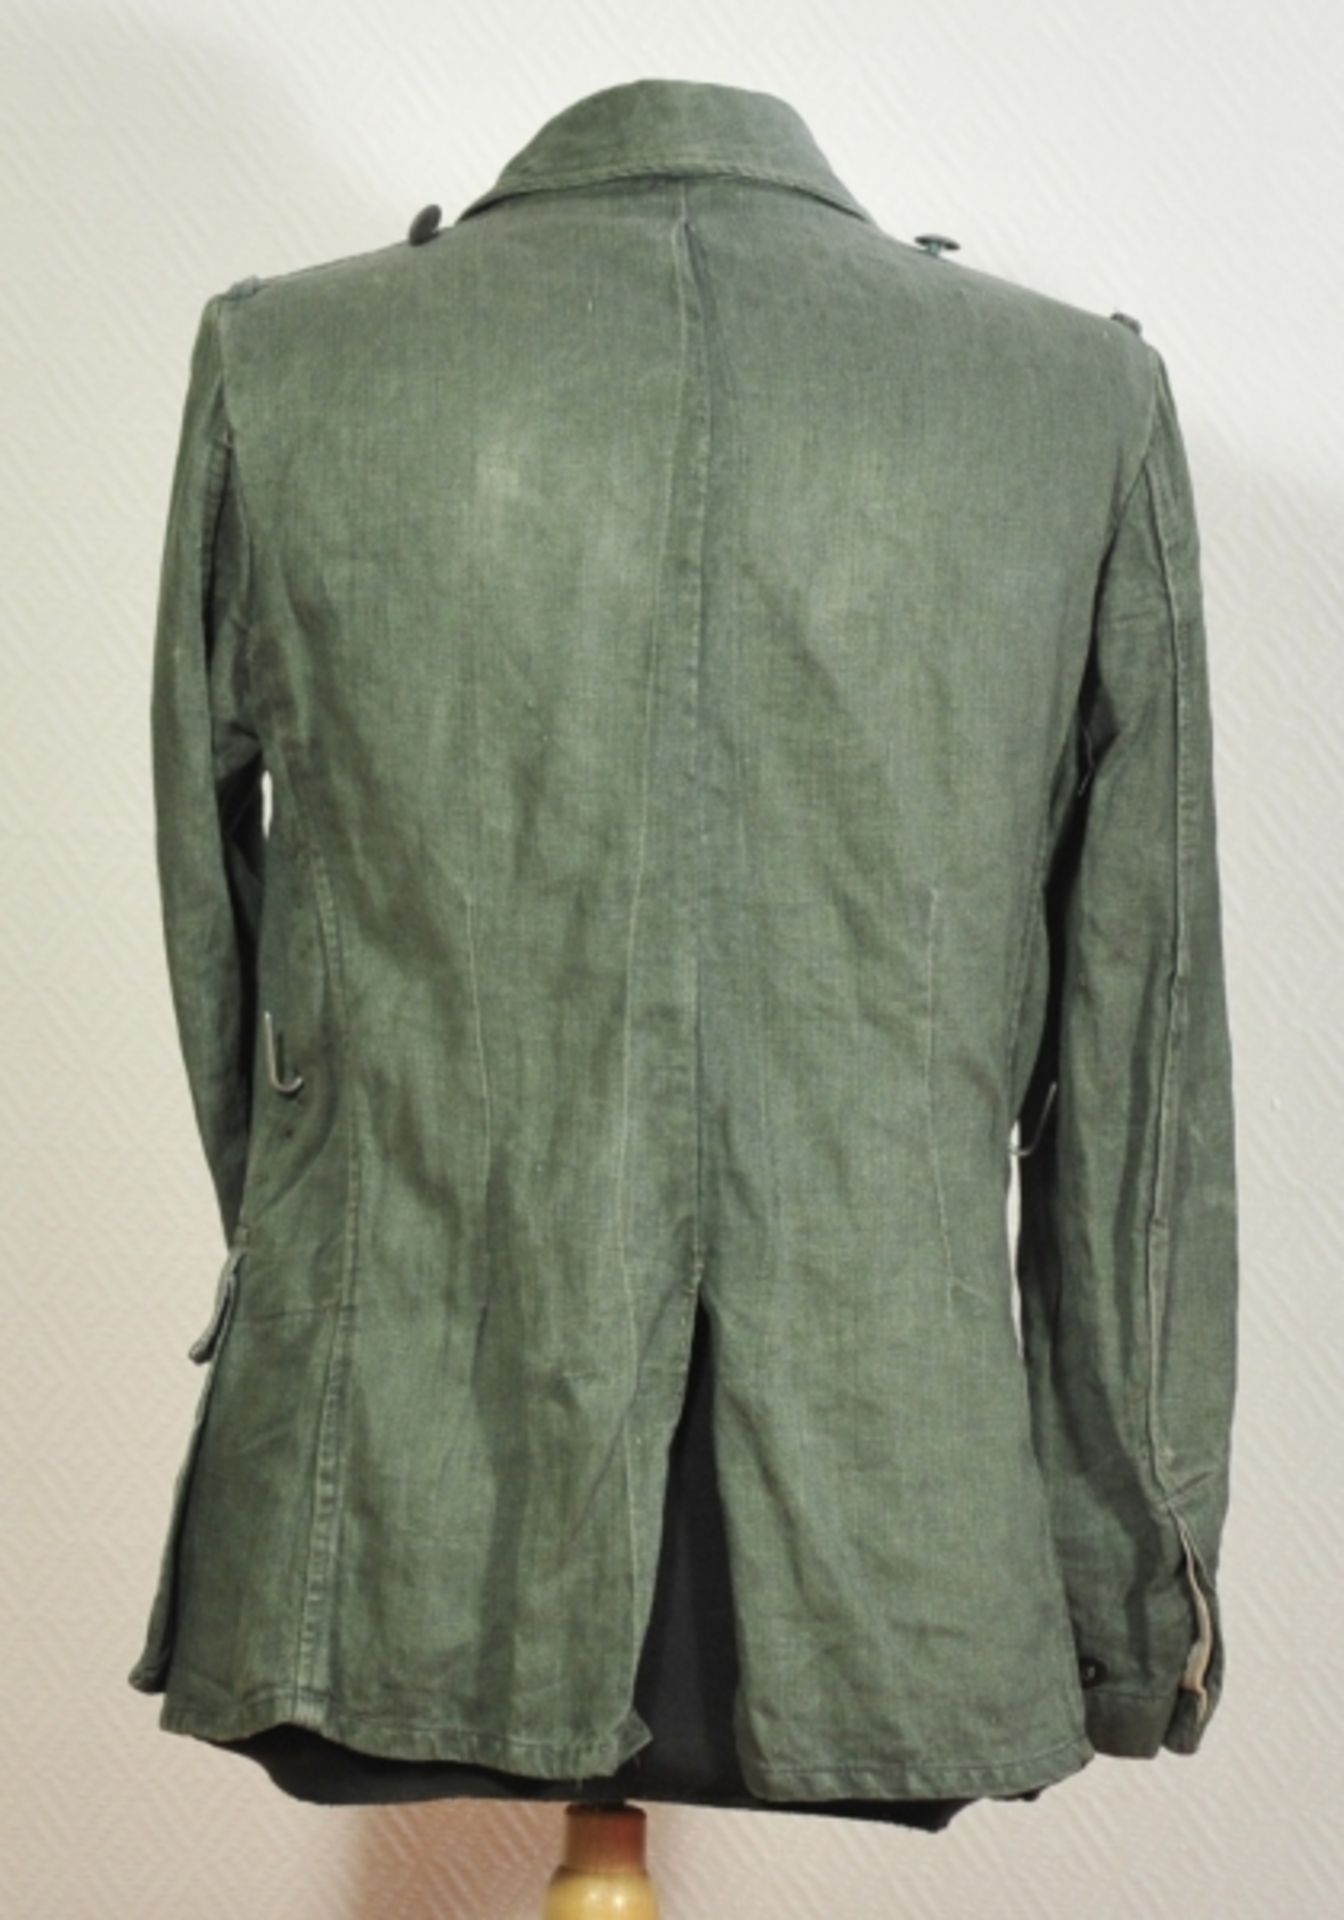 Feldbluse der Wehrmacht.Grünes Tuch, Fischgrätmuster, graue Knöpfe, mit zwei Koppelhaken, die - Image 3 of 5